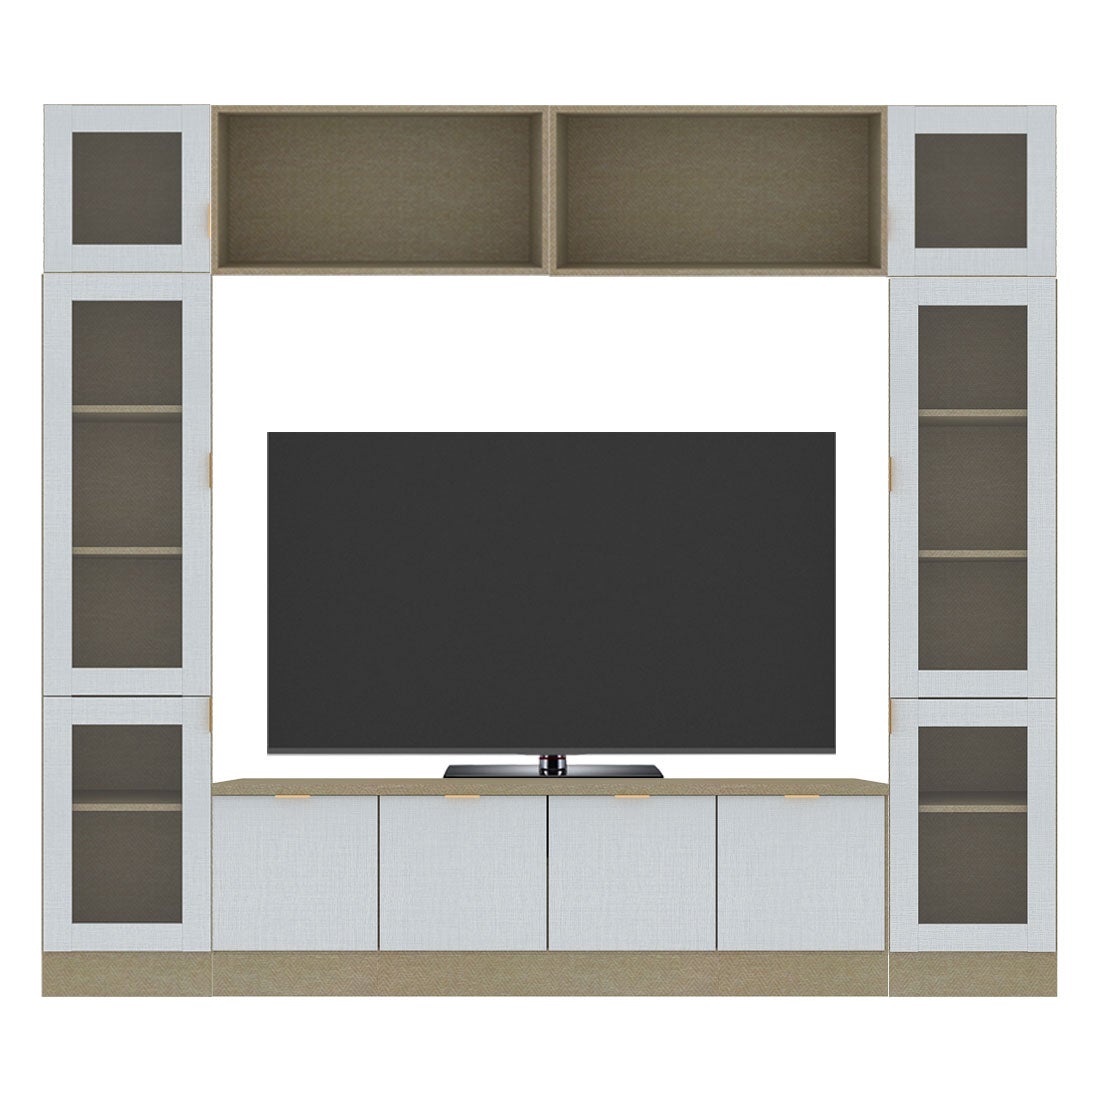 ชุดวางทีวีและตู้โชว์ ขนาด 240 ซม. รุ่น Contini Plus สีขาวลายผ้า01